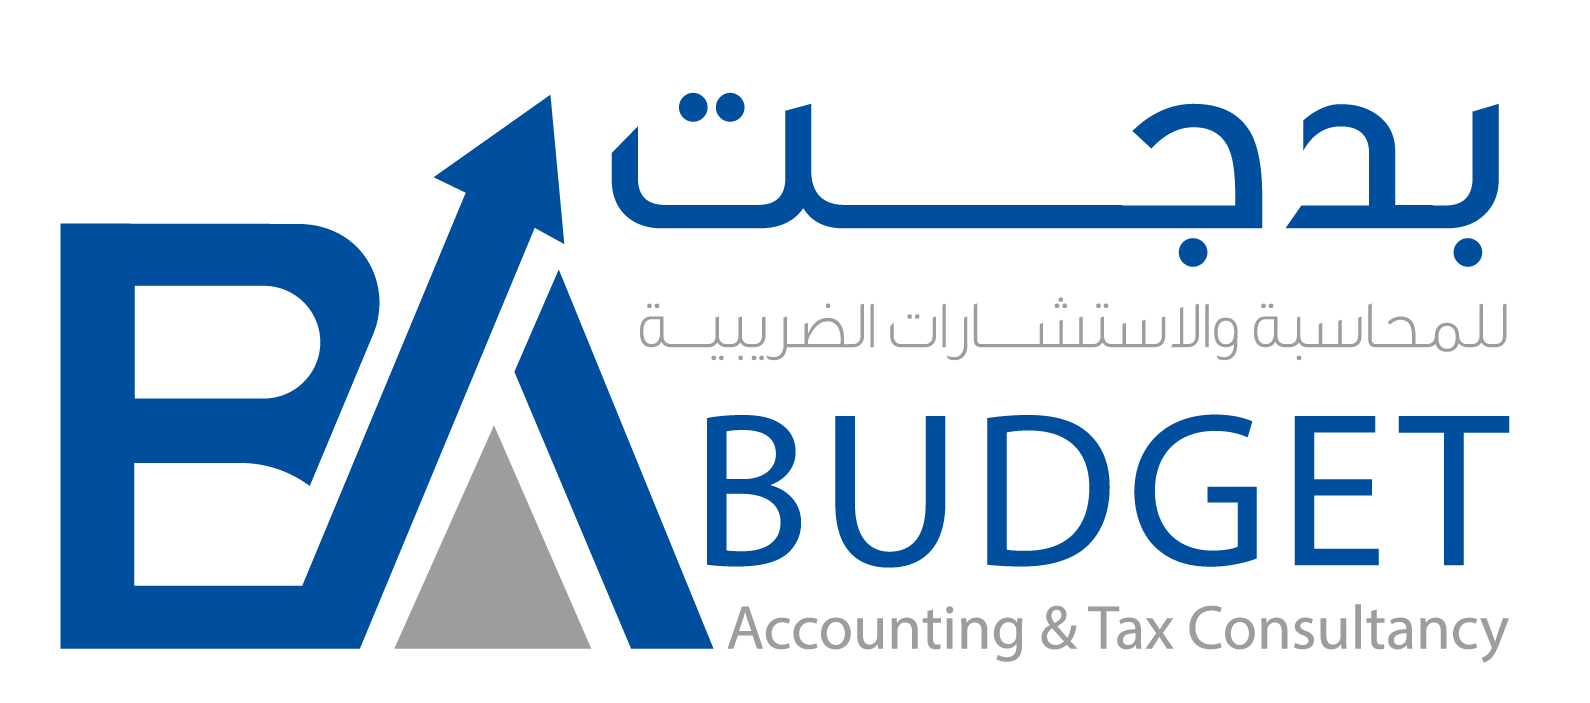 Budget UAE